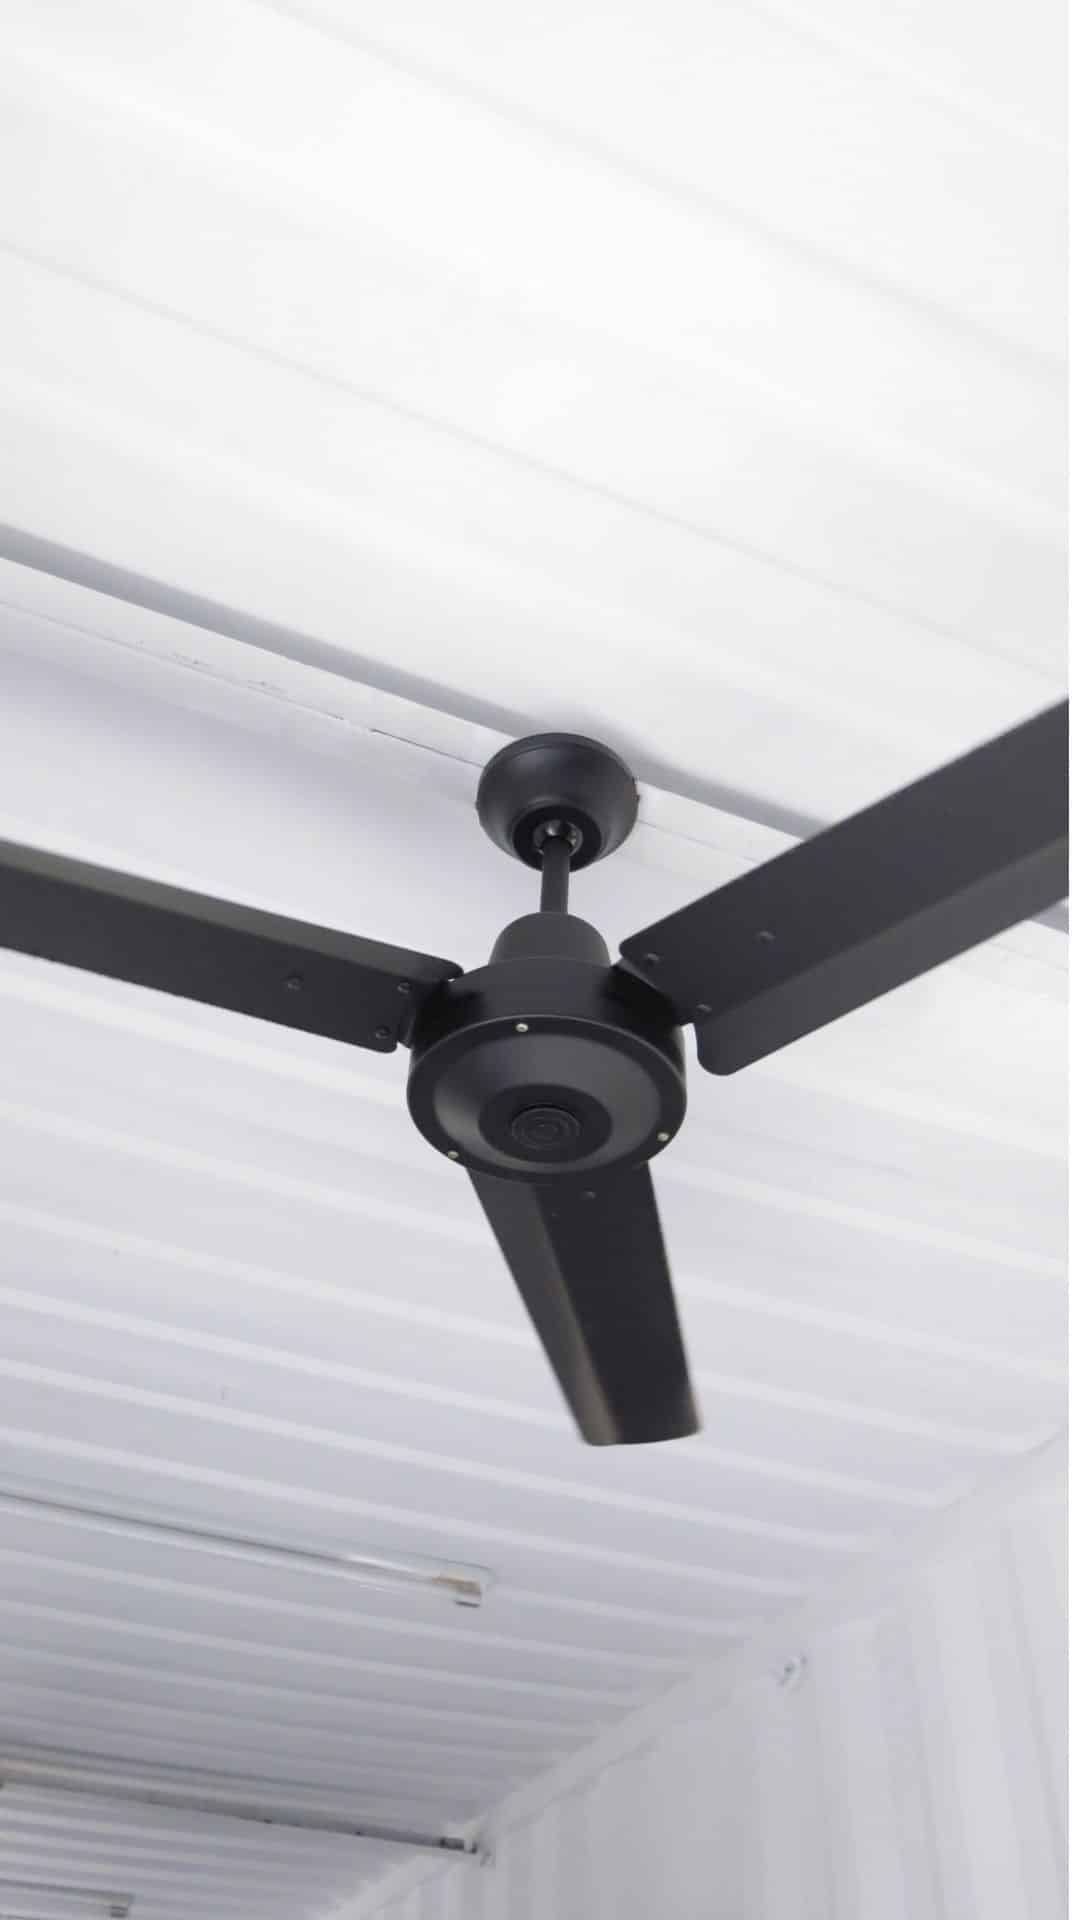 modern ceiling fan ceiling fan with DC motors (1080 × 1920 px)